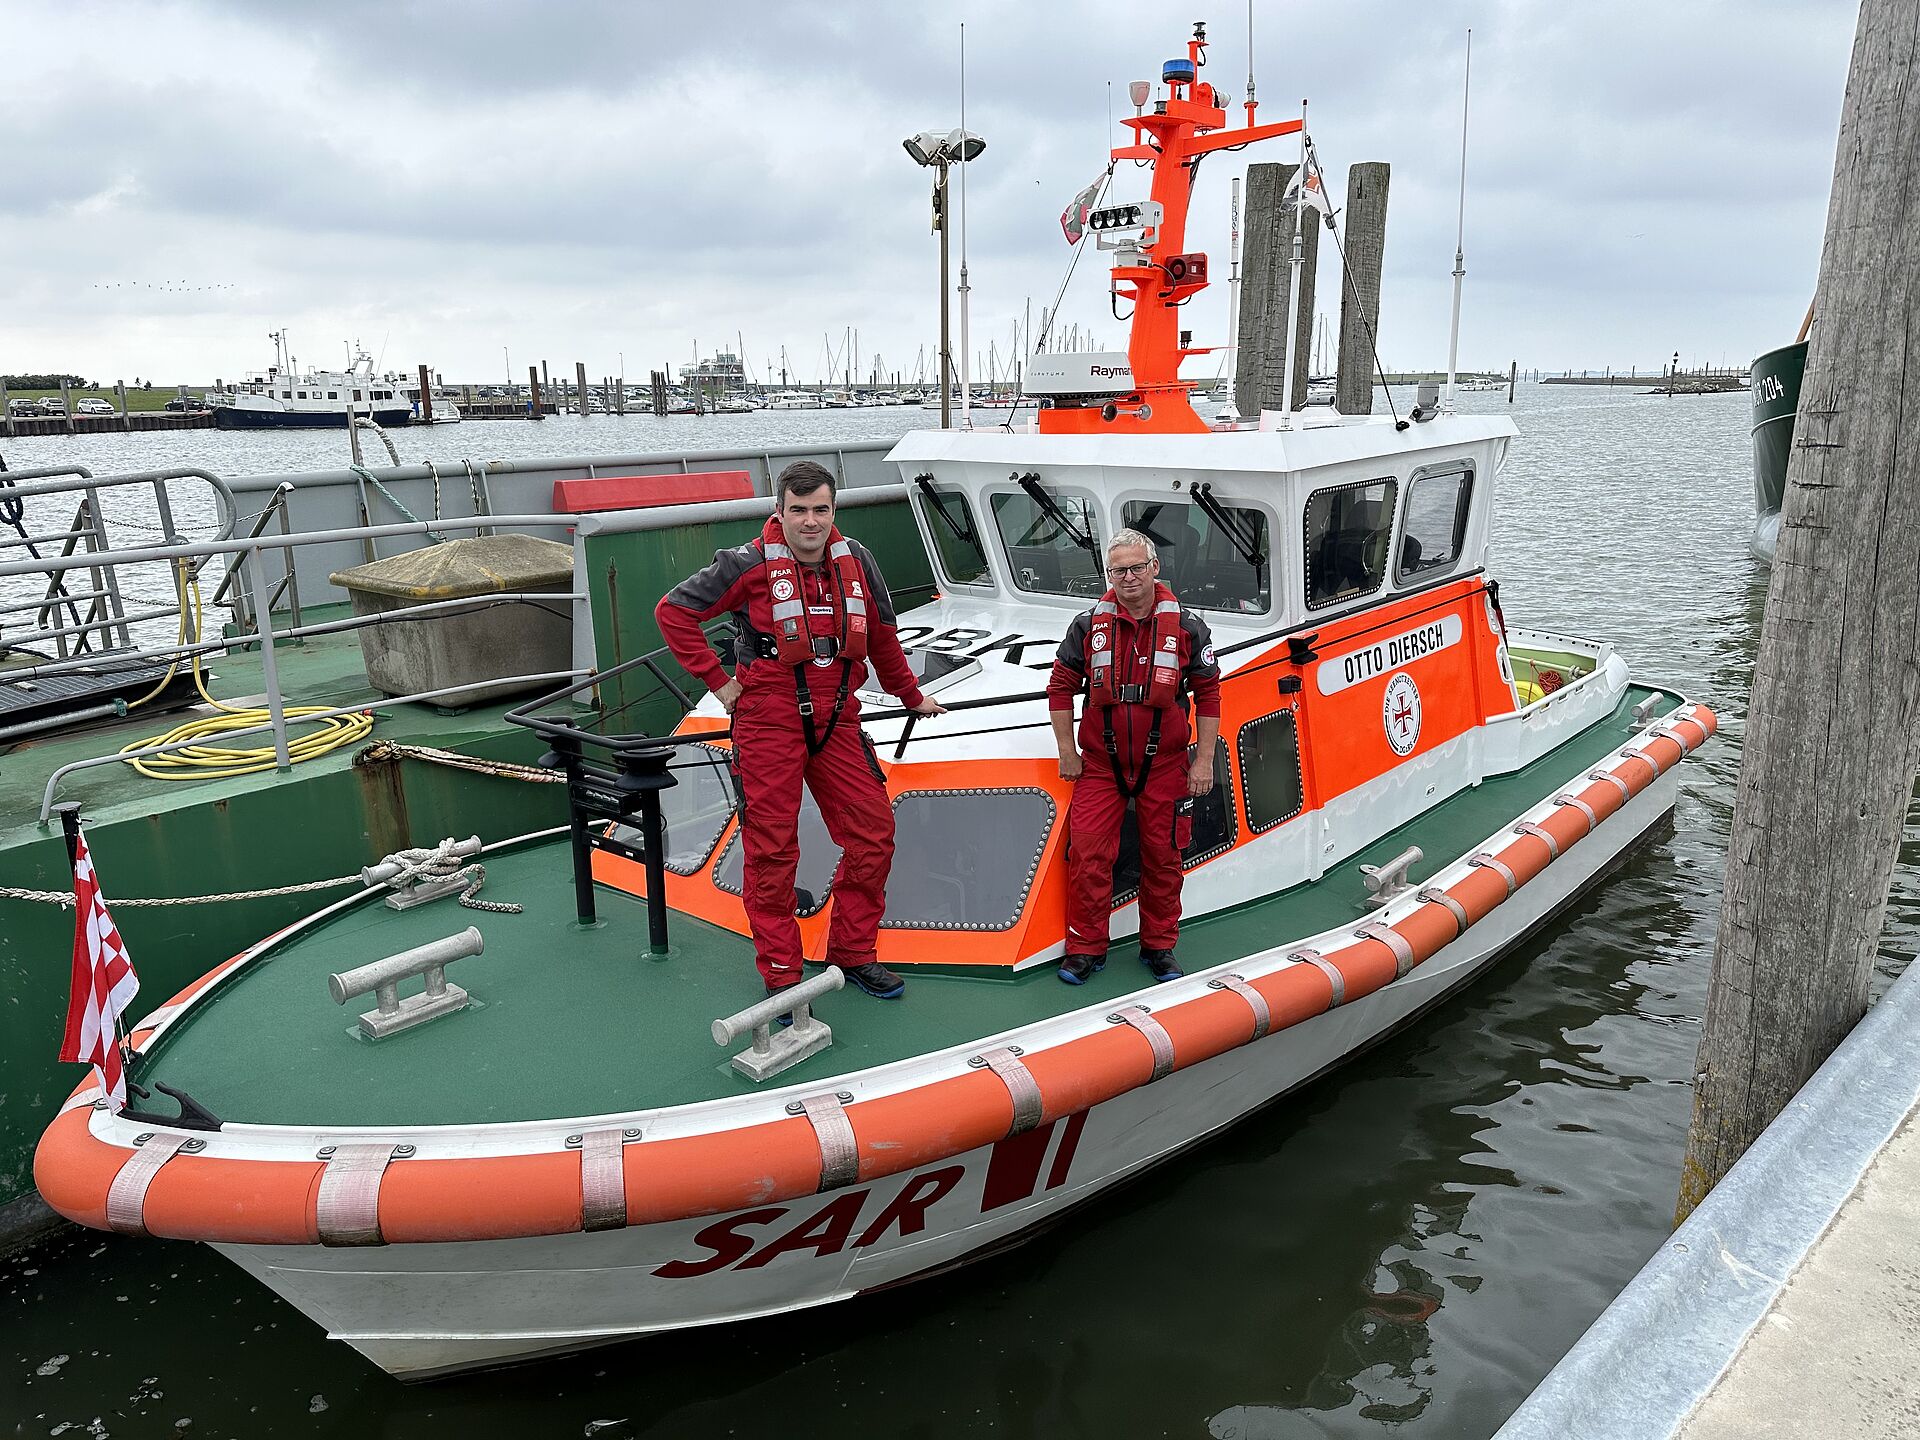 Der neue Vormann der Freiwilligen-Station Norddeich, Alexander Klingenborg (l.) und sein Vorgänger Marcus Baar, bekleidet mit rotem Überlebensanzug, an Bord des DGzRS-Seenotrettungsbootes OTTO DIERSCH.